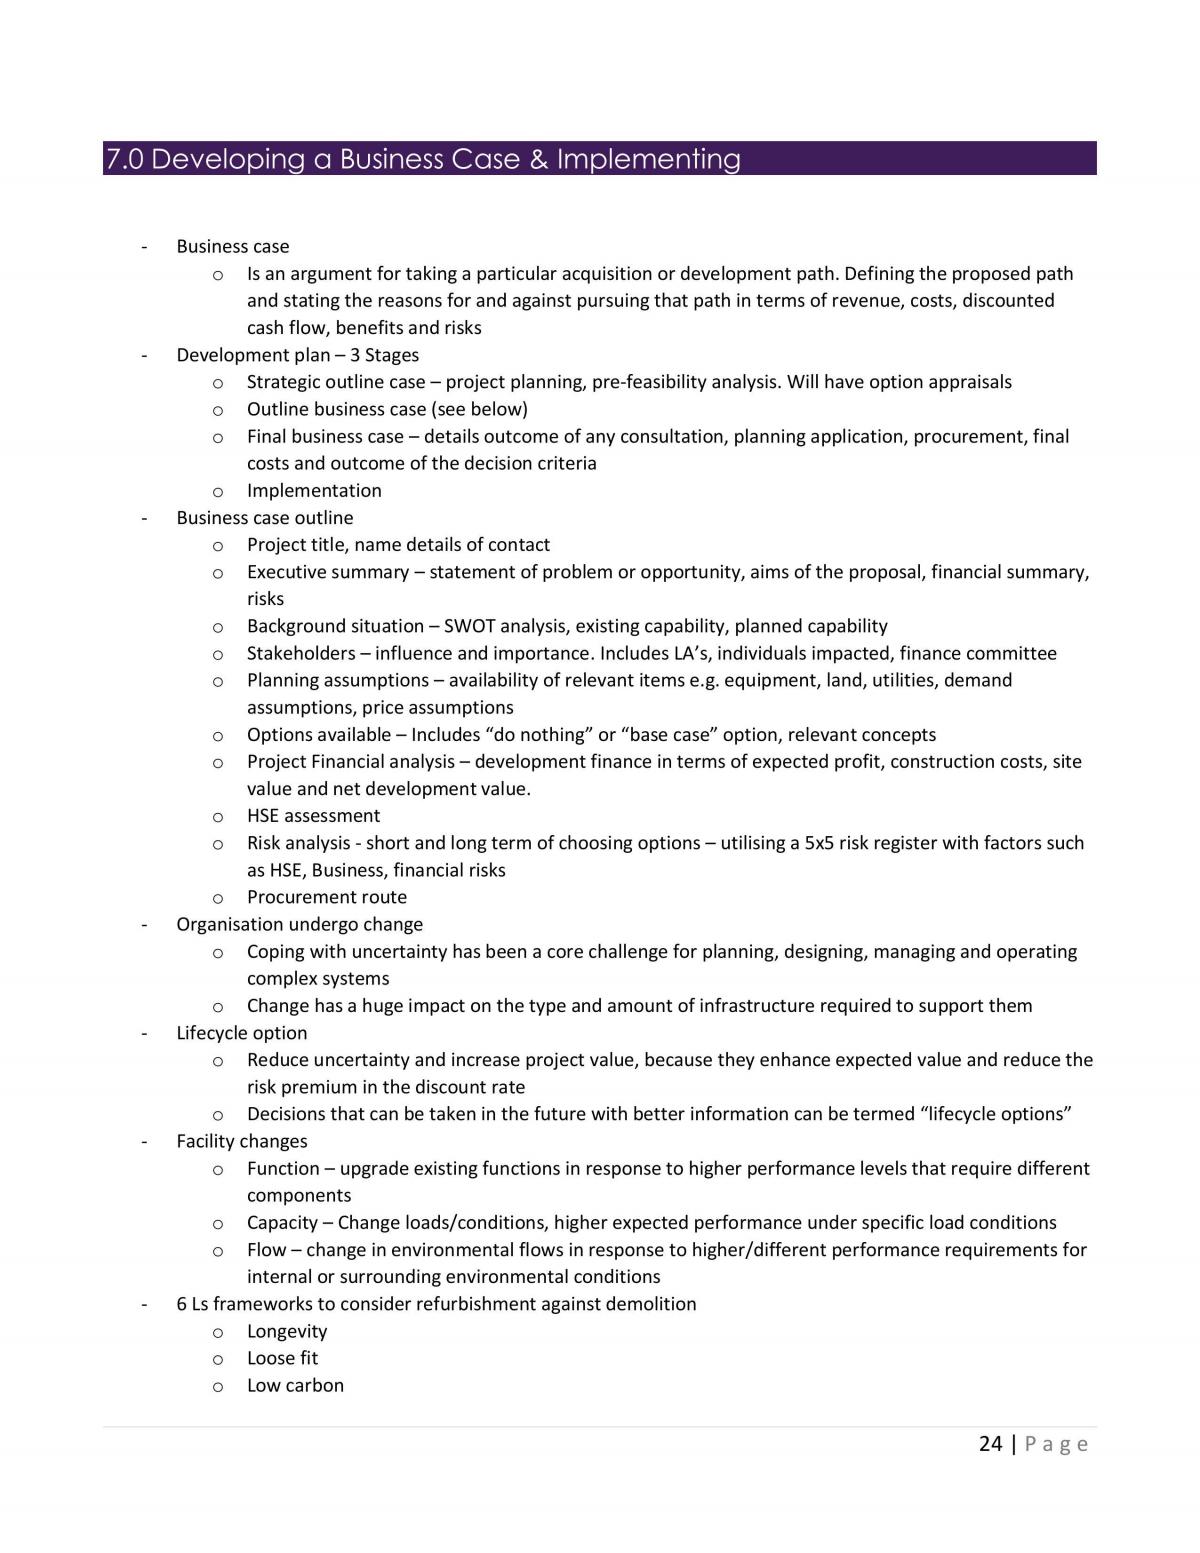 Built Asset Management Complete Study Notes - Page 25